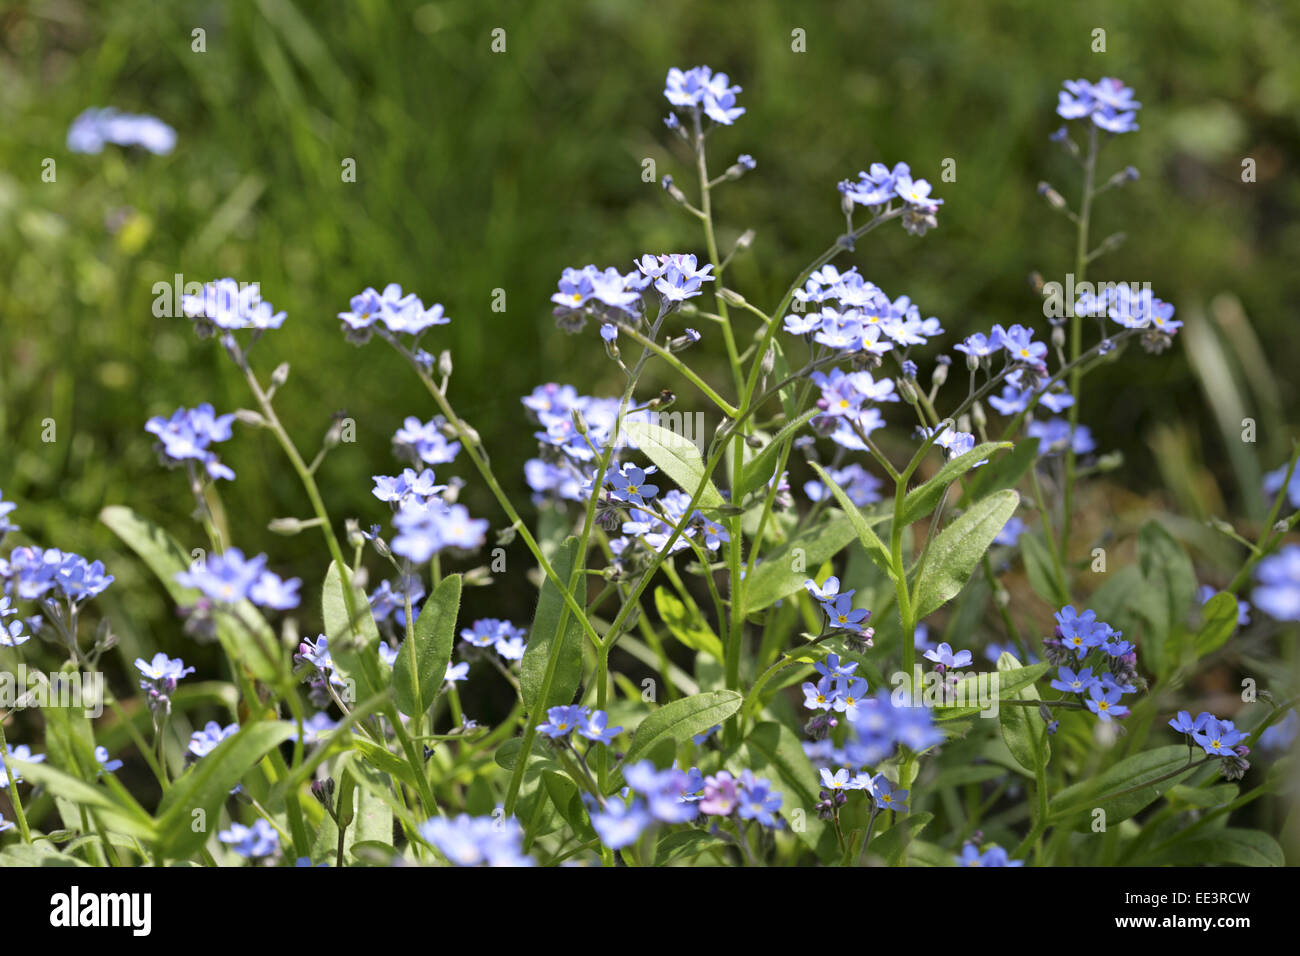 Blume, Blumen, Bluete, Nahaufnahme, Natur, Pflanze, Schoenheit, Vergissmeinnicht, aussen, blau, bluehen, bluehend, close-up, fil Foto Stock